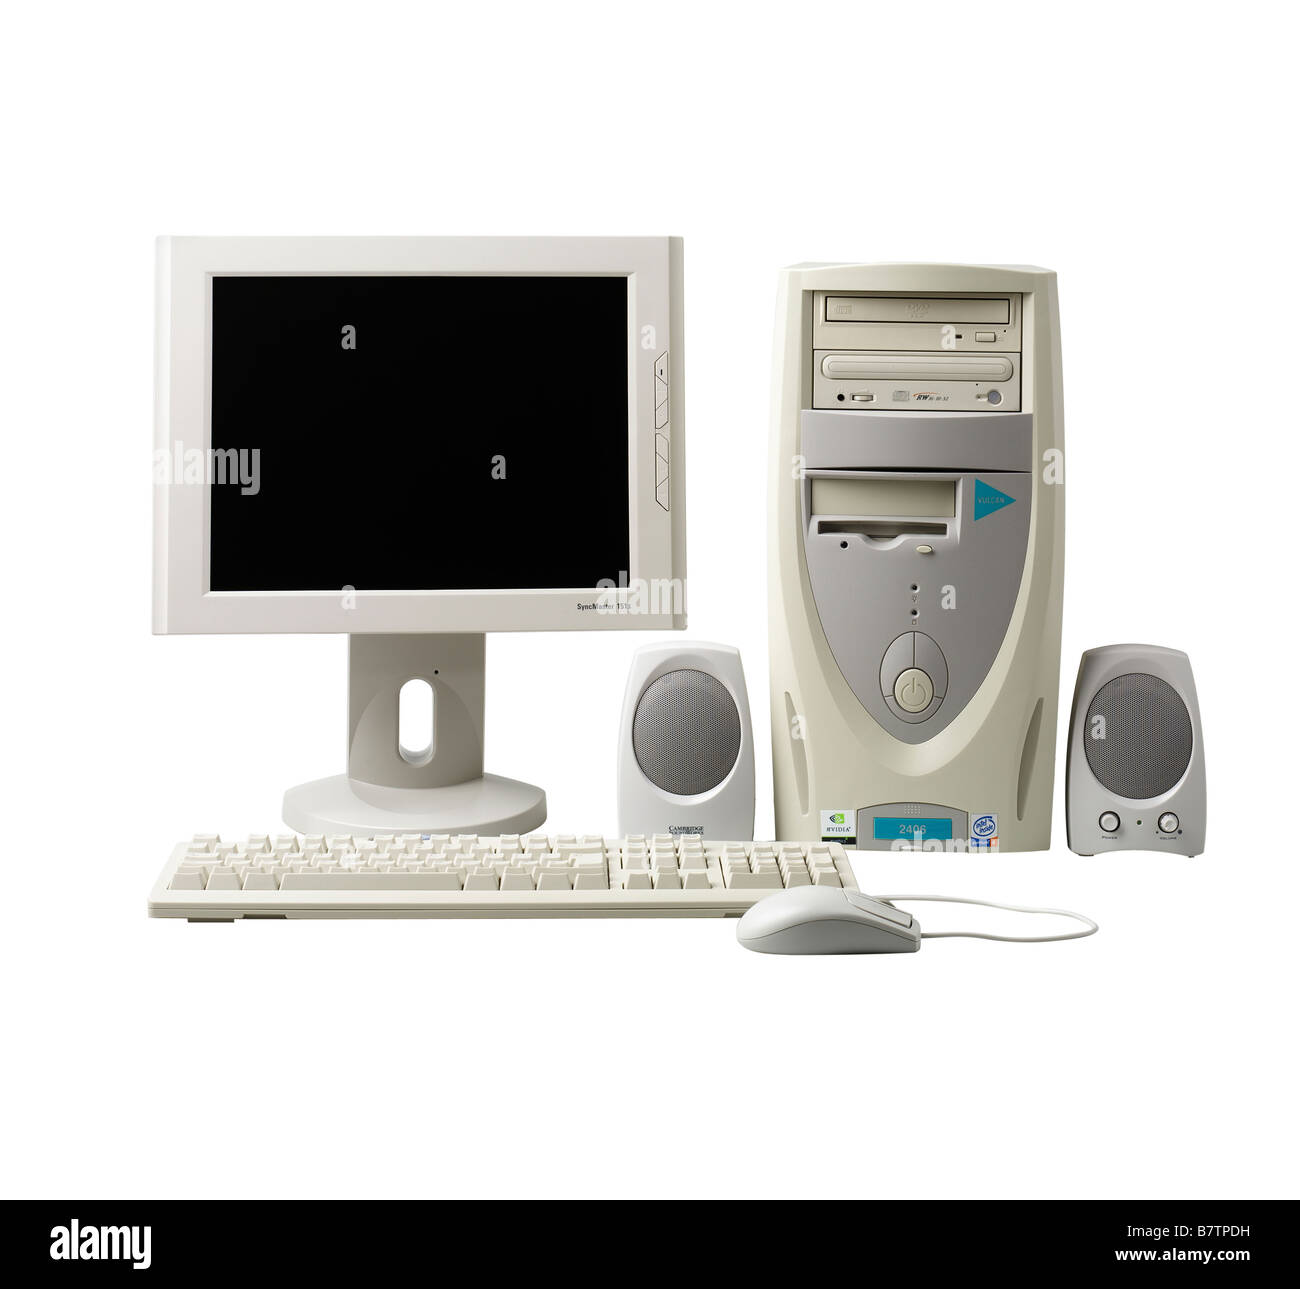 La tour de l'écran et le clavier de l'ordinateur Banque D'Images